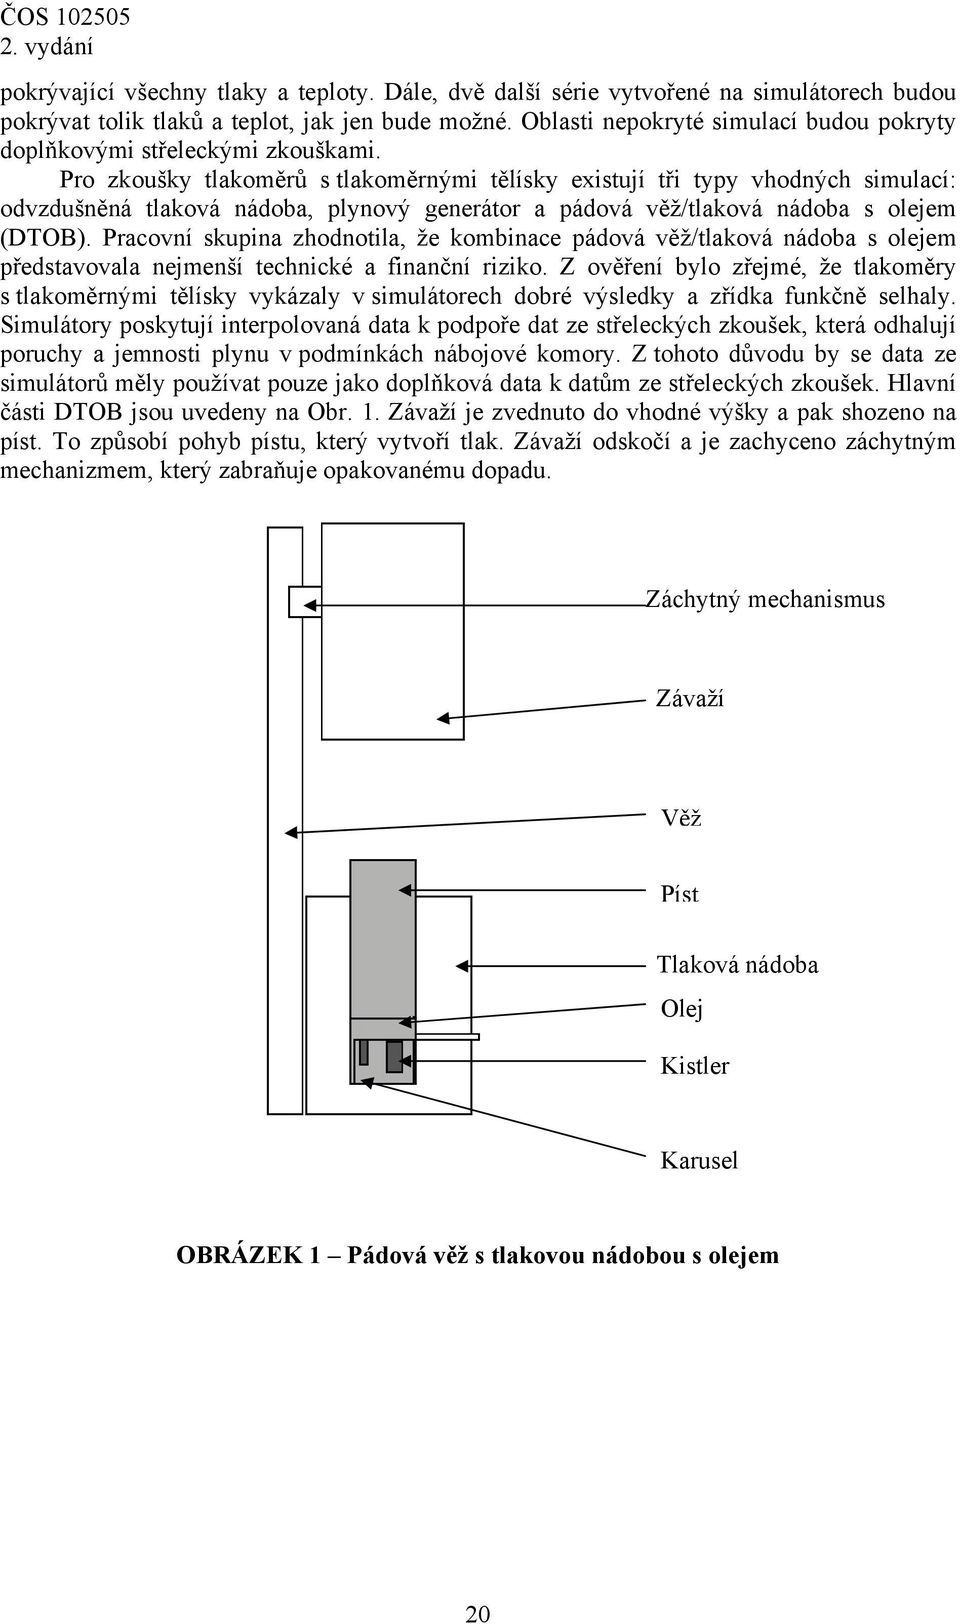 Pro zkoušky tlakoměrů s tlakoměrnými tělísky existují tři typy vhodných simulací: odvzdušněná tlaková nádoba, plynový generátor a pádová věž/tlaková nádoba s olejem (DTOB).